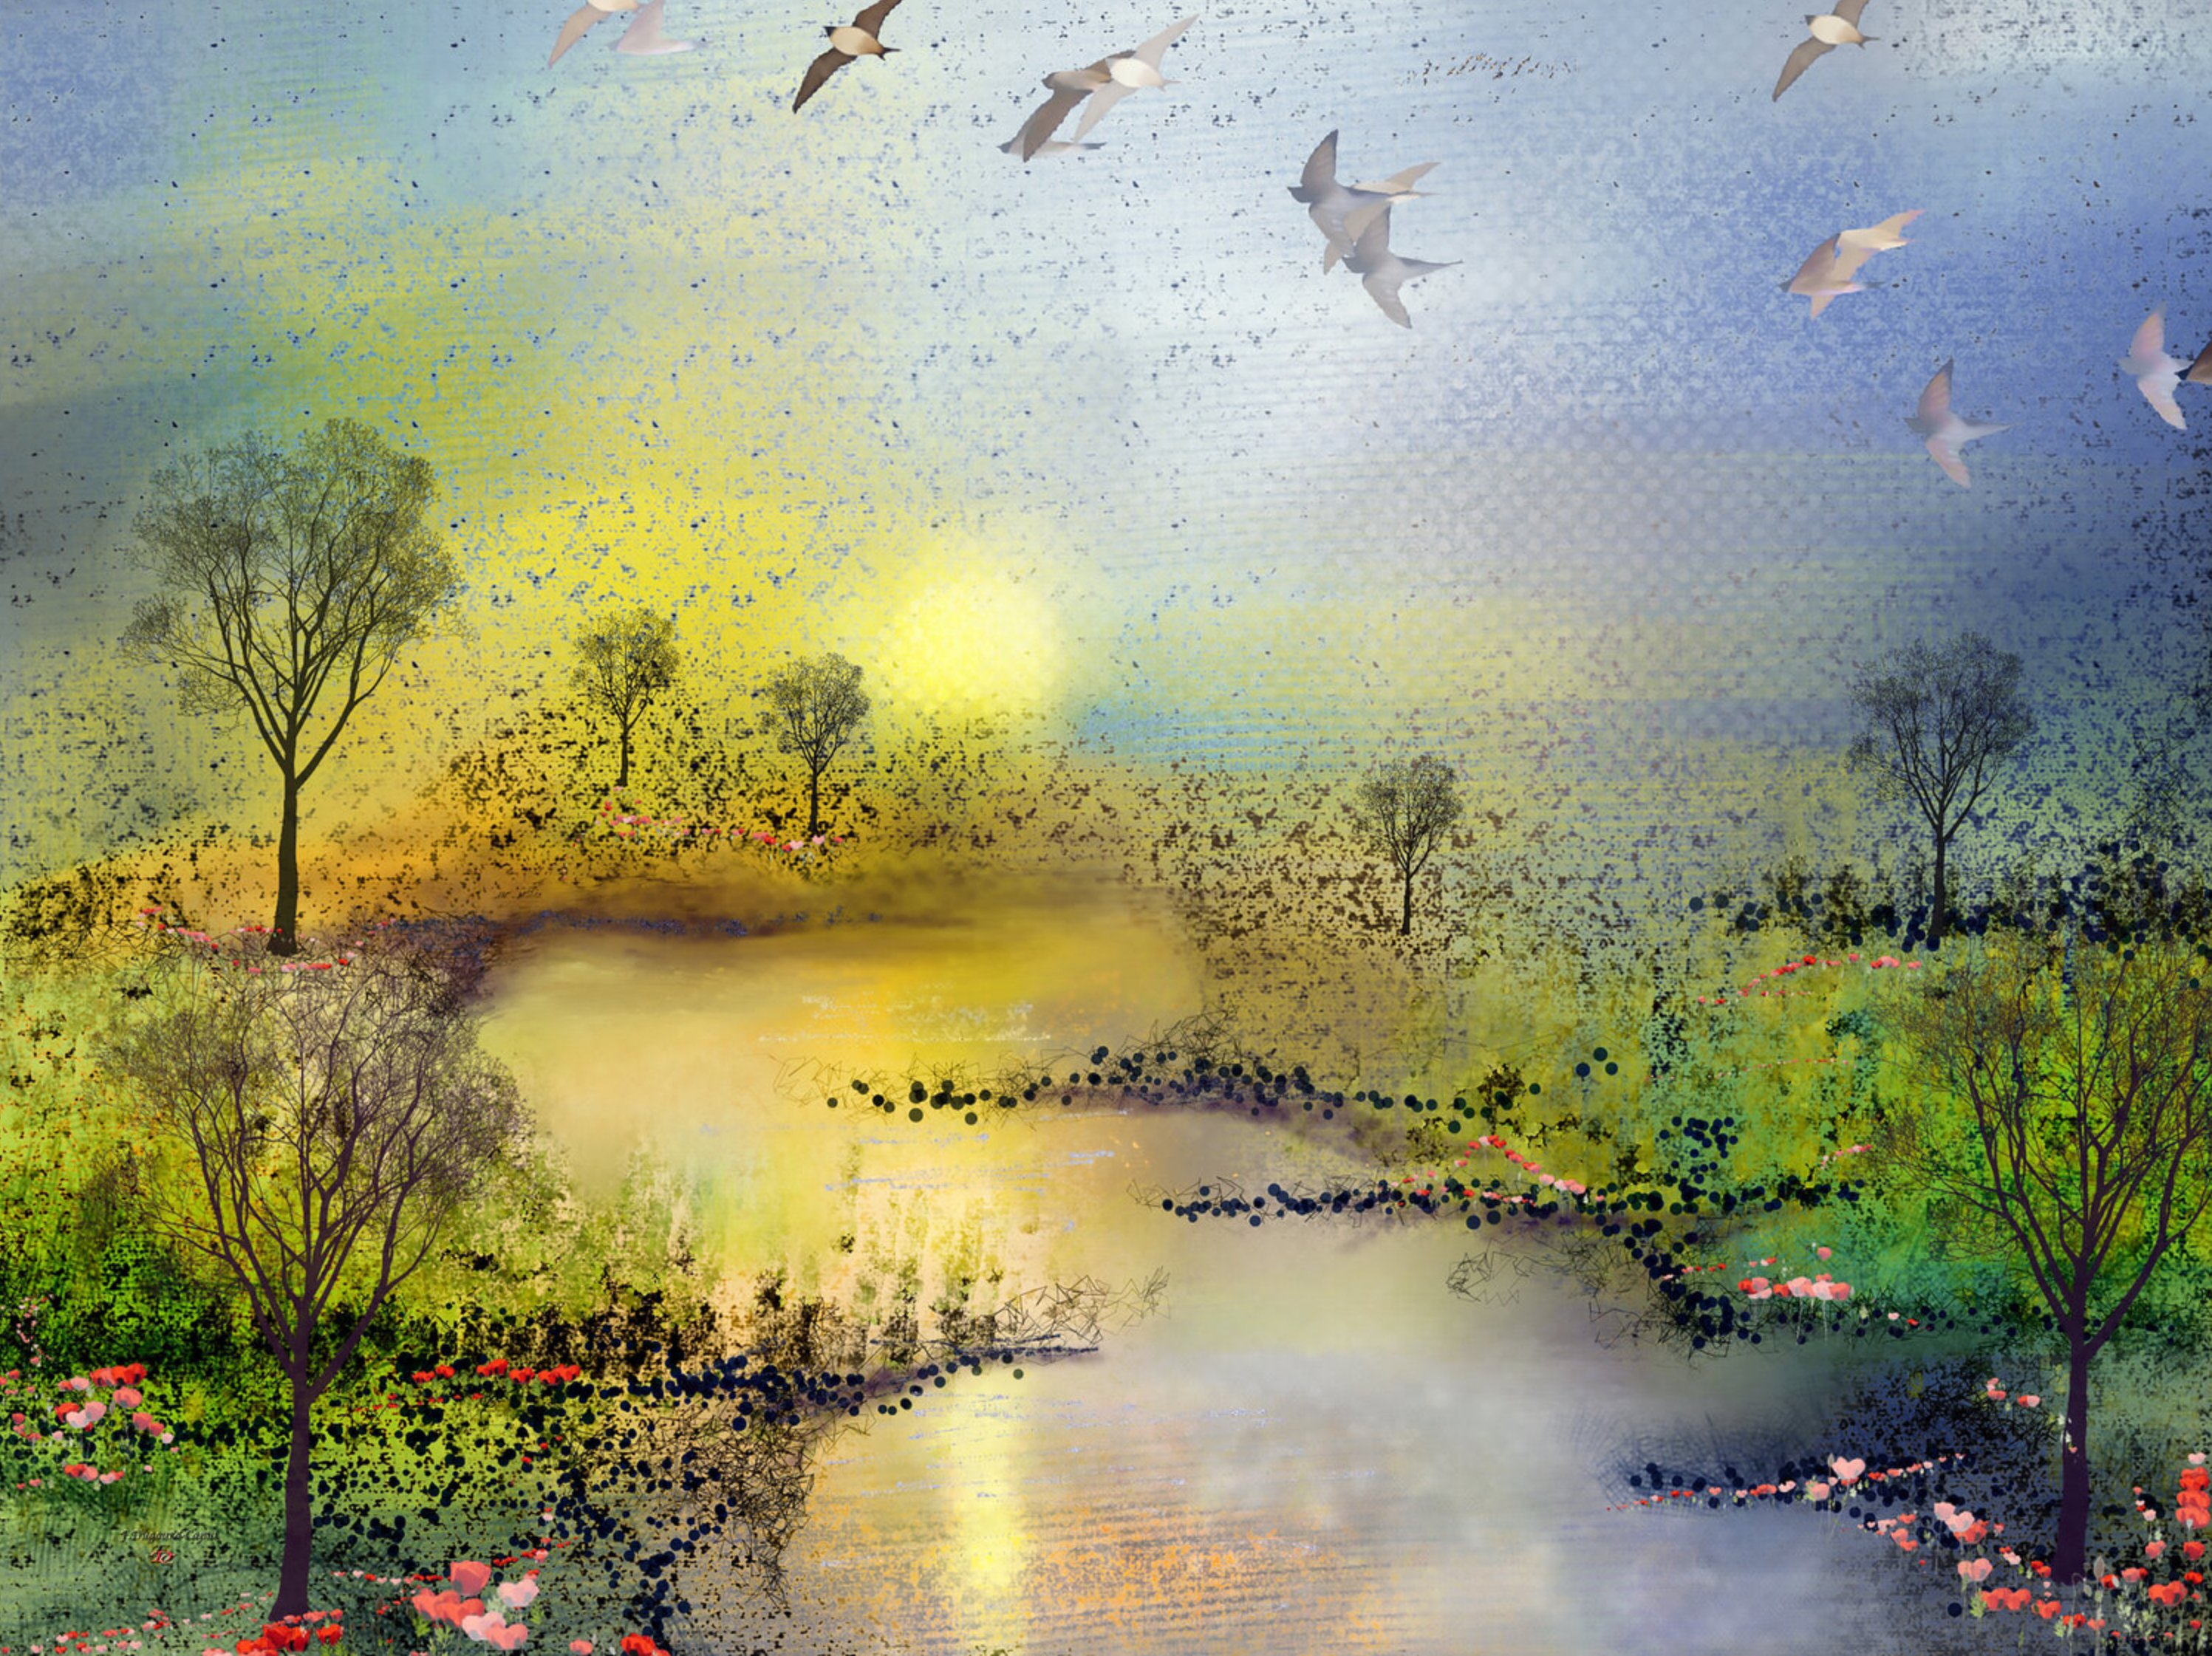 La peinture abstraite "Les coquelicots" de Françoise Dugourd-Caput représente un paysage printanier imaginaire plein de douceur, avec une rivière qui serpente au coucher du soleil entre deux prairies vertes bordées de coquelicots.